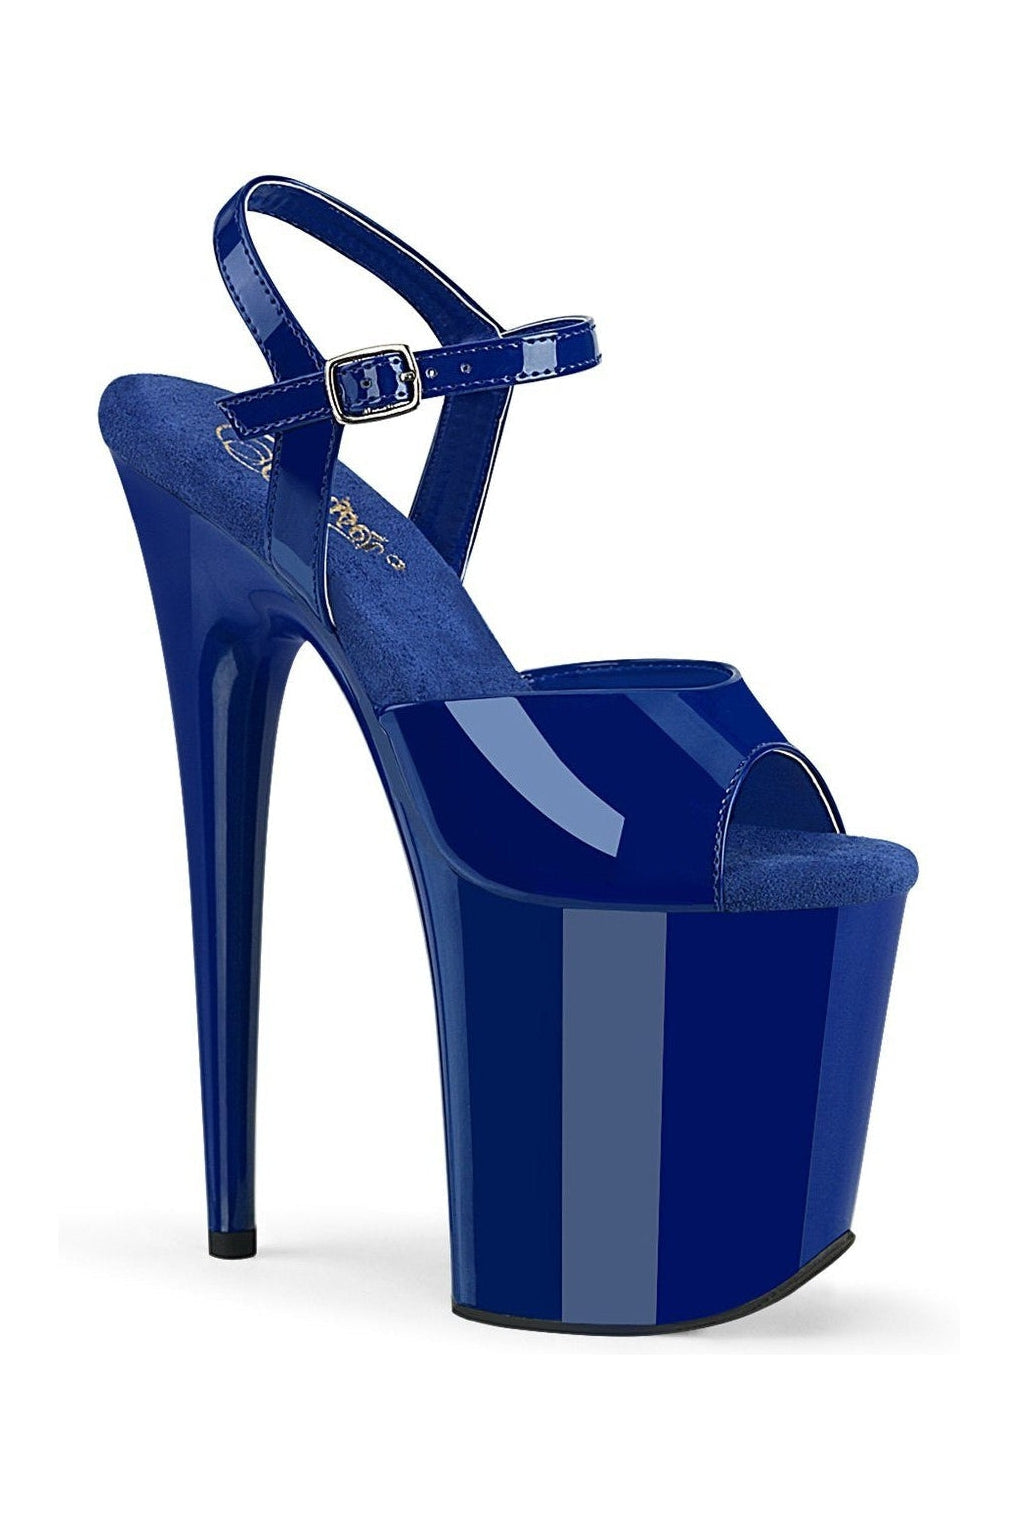 FLAMINGO-809 Sandal | Blue Patent-Sandals-Pleaser-Blue-11-Patent-SEXYSHOES.COM